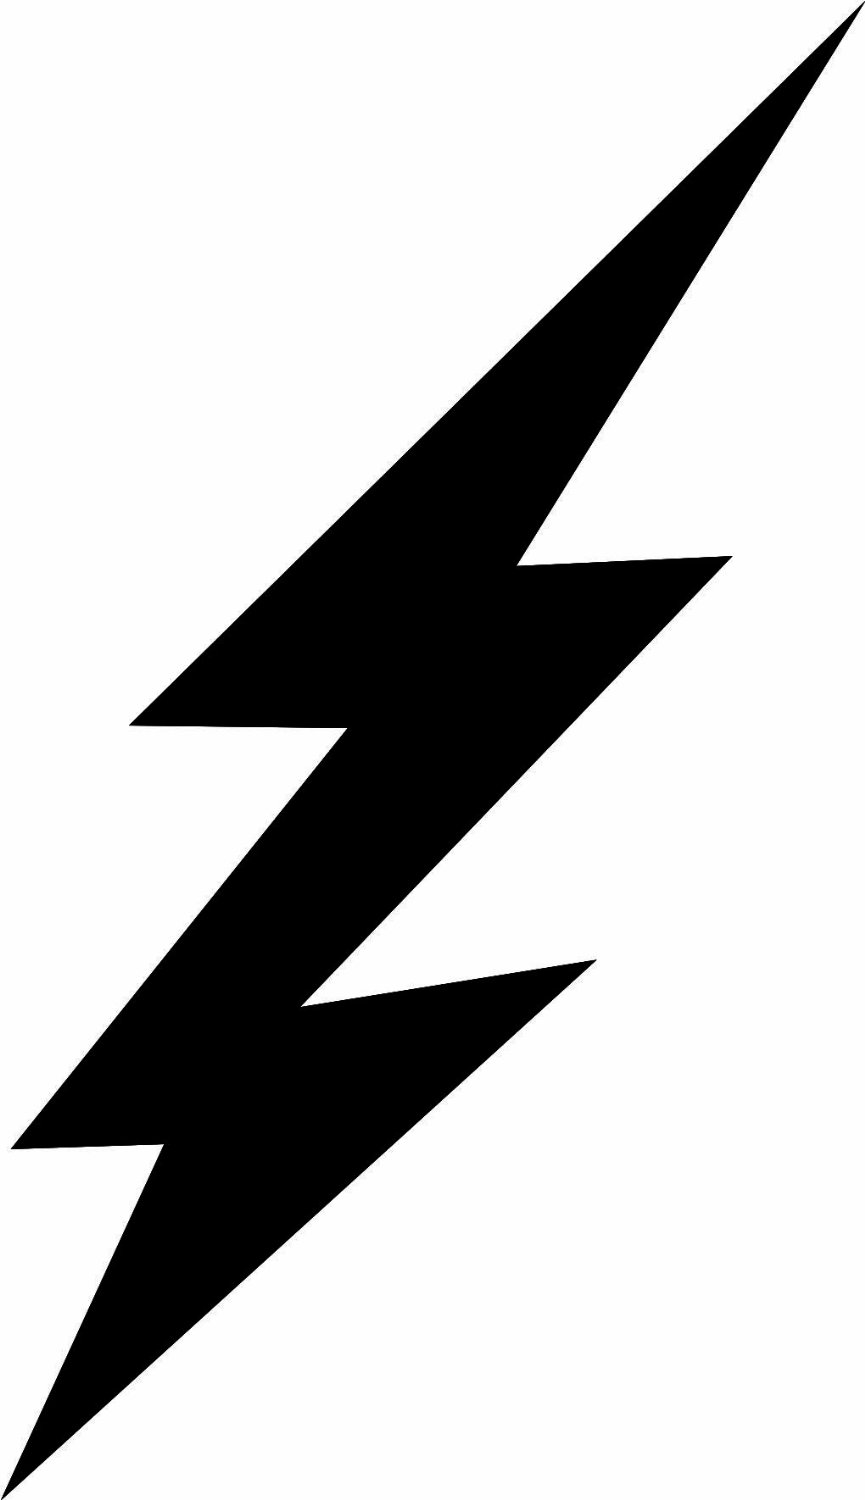 Images For > Lightning Bolt Transparent